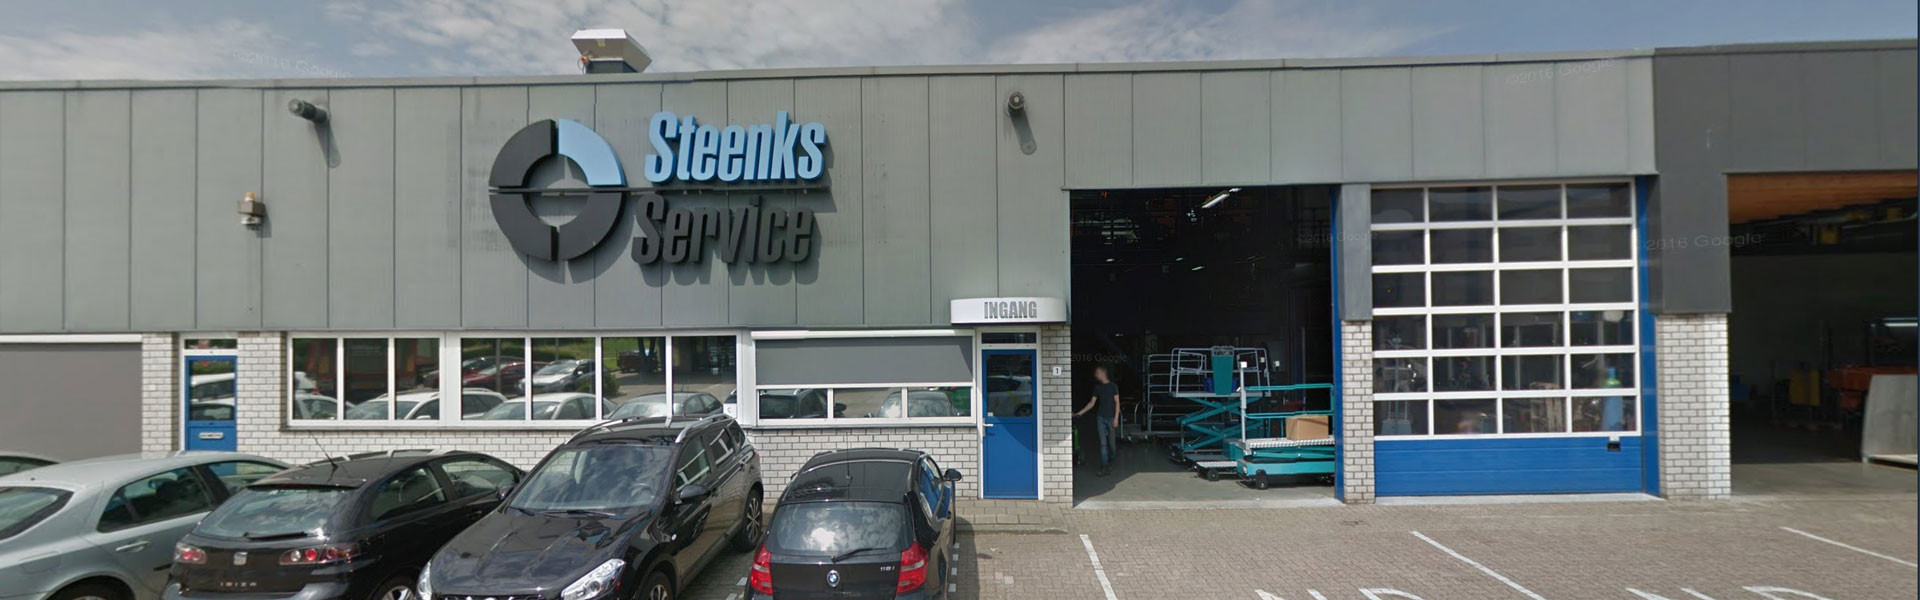 Betrieb Steenks Service | De Lier Holland